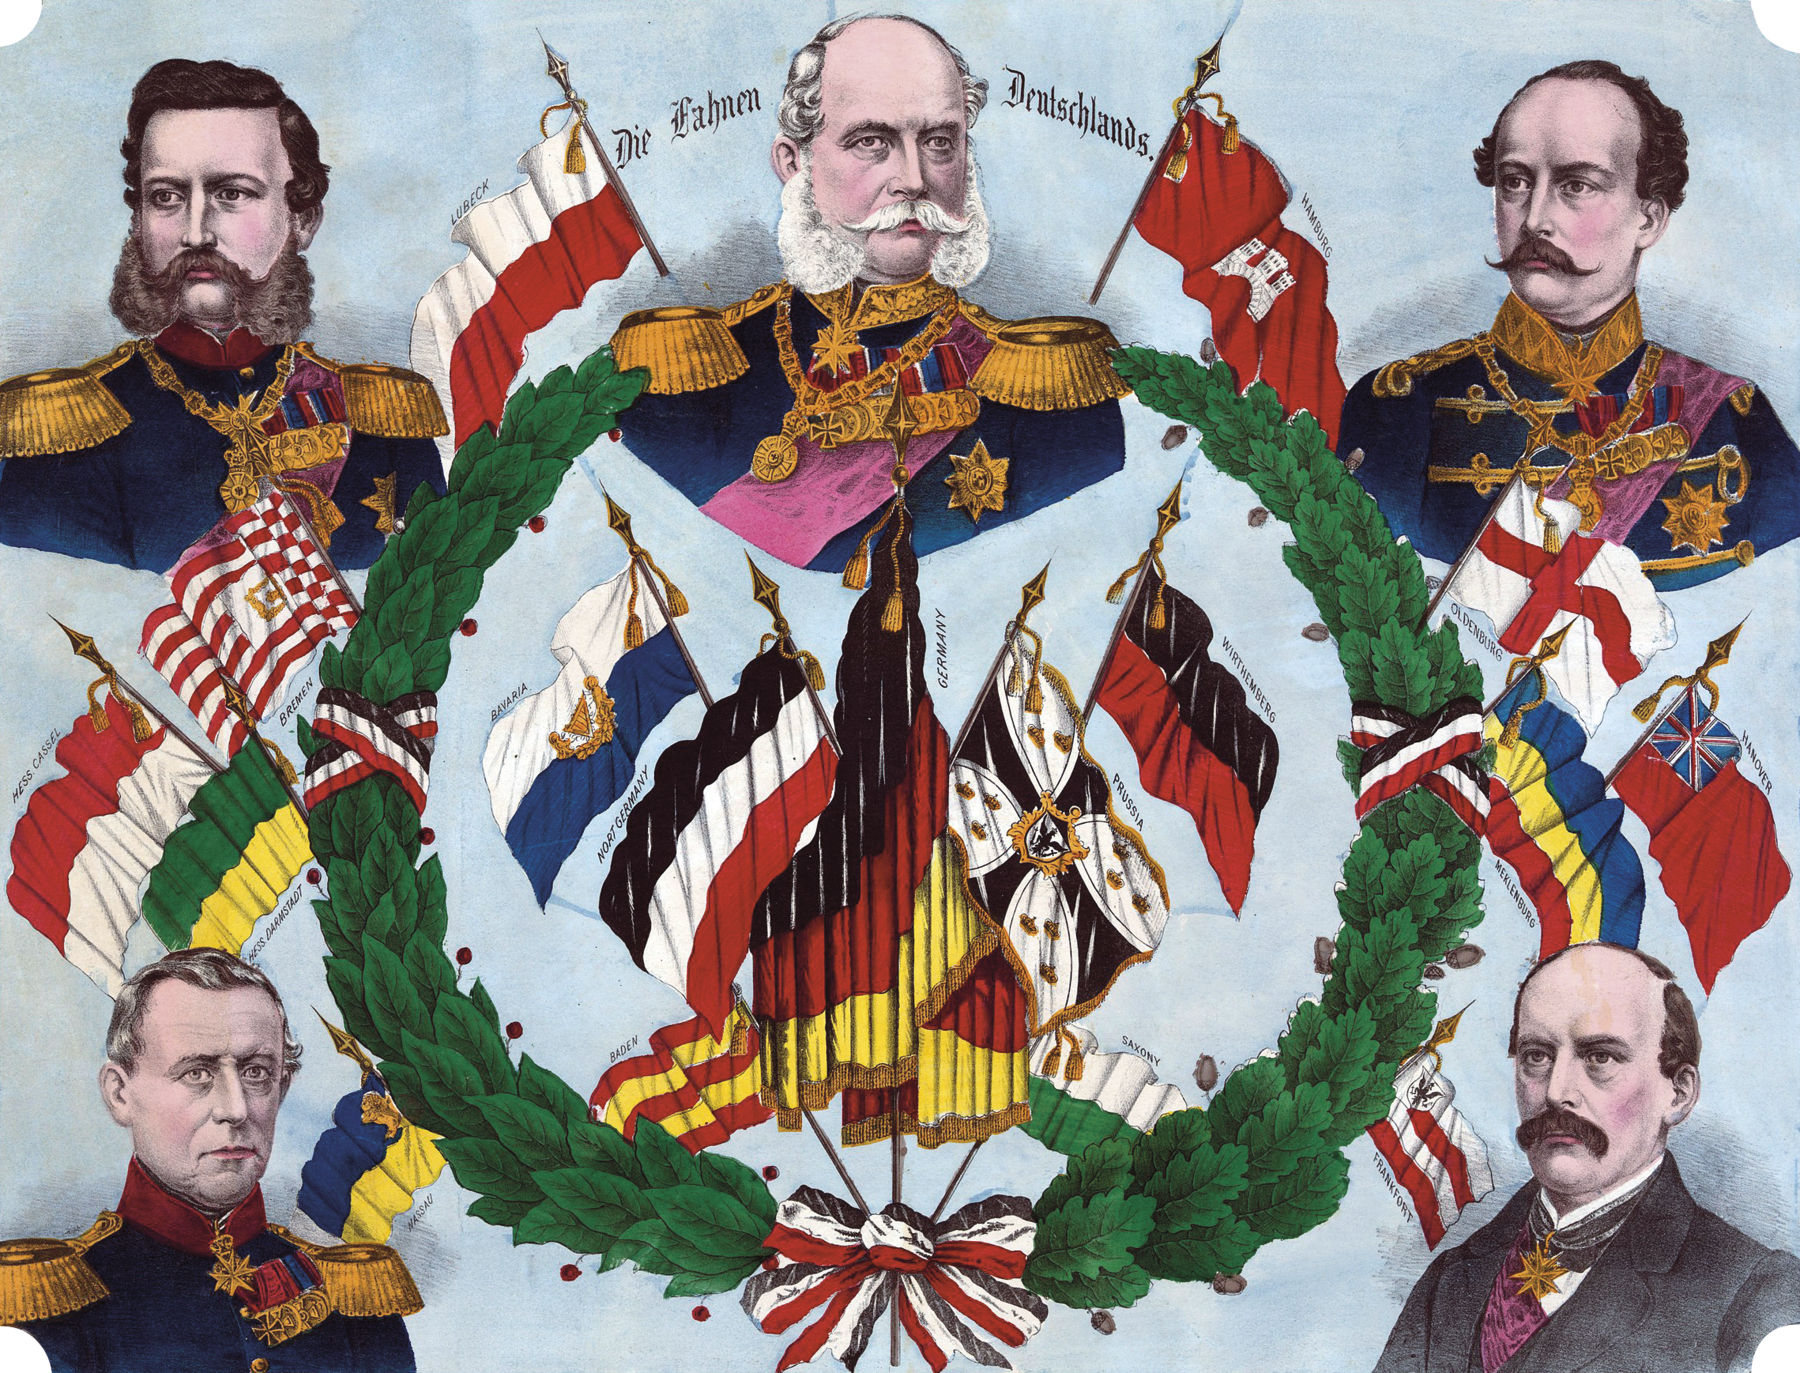 Gravura. No centro da imagem, uma coroa de louros de folhas verdes ao redor de um feixe com sete bandeiras (com destaque para a bandeira da Alemanha, com suas faixas horizontais nas cores preta, vermelha e amarela). Ao redor das bandeiras, identificando-as, as inscrições: Baden, Alemanha do Norte, Bavaria, Alemanha, Prússia, Wirtenberg e Saxônia. Ao redor da coroa de louros, há três bandeiras à esquerda (Bremen, Resse-Kassel e Resse-Darmstadt) e três bandeiras à direita (Oldemburgo, Hanover, Meclemburgo), além dos retratos de cinco homens. Em sentido horário: No alto da imagem, no centro, um homem visto de frente. Ele é calvo, com cabelos ondulados, ralos e brancos na lateral da cabeça, com uma volumosa barba grisalha nas laterais do rosto e um bigode espesso de pontas finas. Veste um traje militar azul-escuro, com colarinho dourado com bordados, dragonas douradas nos ombros, uma estrela e medalhas douradas no peito, um grande medalhão dourado preso a uma corrente e uma faixa rosa cruzando seu peito. Em torno dele, uma inscrição em língua alemã, além da bandeira de Lübeck, à esquerda, e a bandeira de Hamburgo, à direita. No alto, à direita, um homem visto de frente, com o olhar voltado para a esquerda. Ele é calvo na frente na cabeça, tem cabelos castanhos, curtos e ondulados nas laterais, e um bigode espesso de pontas finas. Veste um traje militar azul-escuro, com botões dourados, colarinho dourado com bordados, um medalhão dourado e uma estrela dourada no peito e uma faixa rosa cruzando seu peito. No canto inferior direito, um homem visto de frente. Ele é calvo, tem cabelos ralos e castanhos nas laterais e no topo da cabeça. Com um bigode castanho, veste um casaco escuro, uma camisa branca e usa um medalhão dourado preso por um lenço escuro ao redor de seu pescoço. Ao lado dele, presa à coroa de louros no centro da imagem, a bandeira de Frankfurt. No canto inferior esquerdo, um homem visto de frente, com cabelos curtos, lisos e acinzentados, vestindo um traje militar azul-escuro, com colarinho vermelho e medalhas douradas no peito. Ao lado dele, presa à coroa de louros, a bandeira de Nassau. No alto, à esquerda, um homem visto de frente, com o olhar voltado para a esquerda. Ele tem cabelos castanhos, curtos e ondulados, uma barba espessa nas laterais do rosto e um bigode de pontas finas. Veste um traje militar azul-escuro, com colarinho vermelho, um medalhão e uma estrela dourada e várias medalhas no peito.